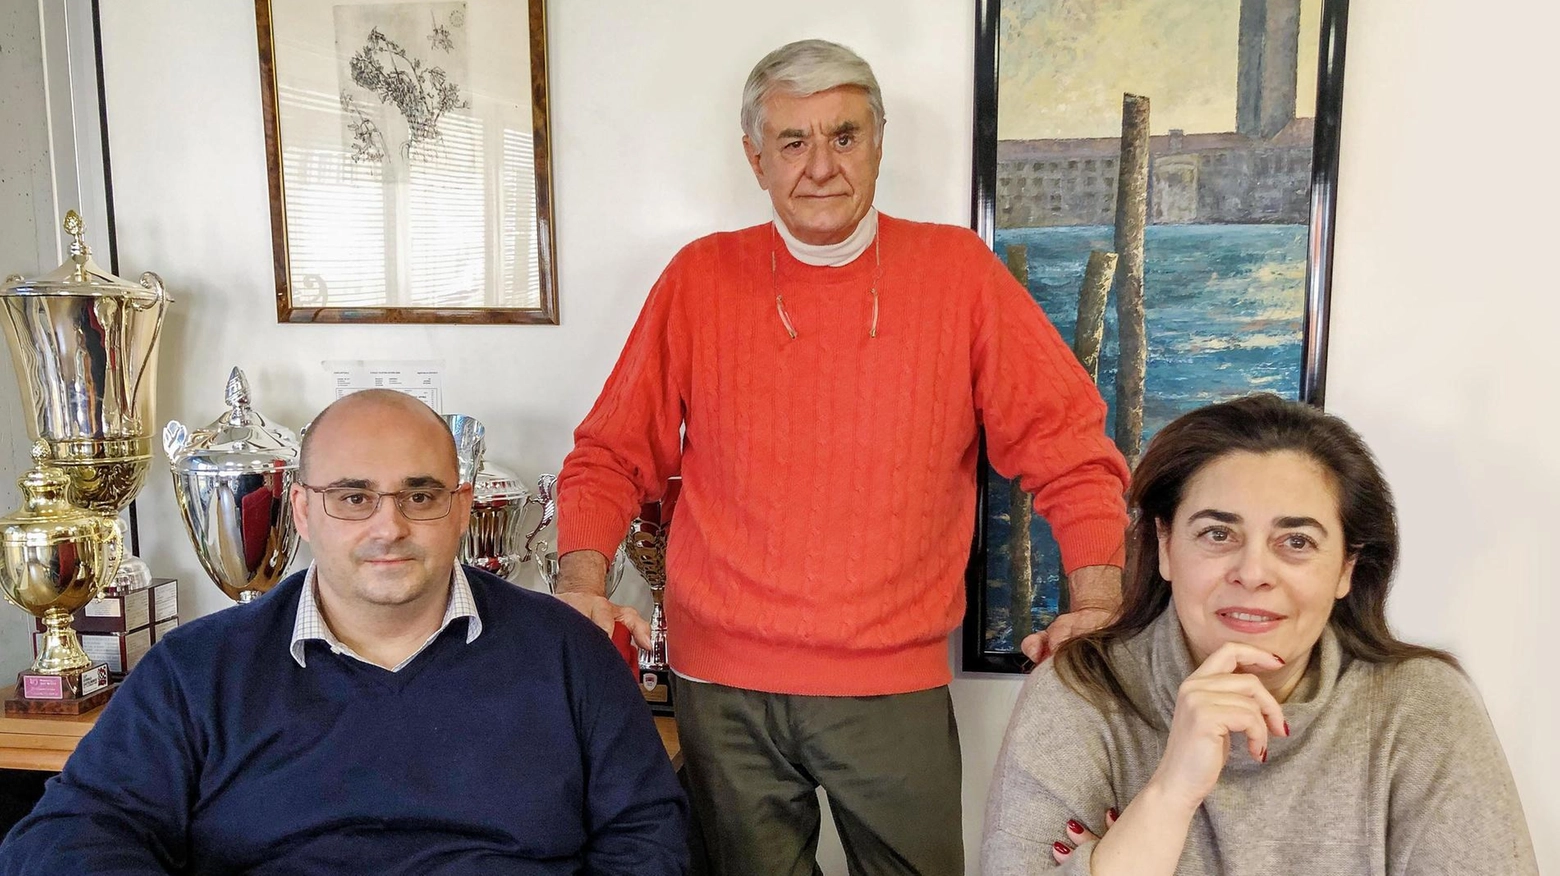 Al centro, il presidente di Ims Giotto, Massimo Sordi; a destra, la figlia Monica Sordi, ad dell’azienda; a sinistra, il figlio Fabio, responsabile ufficio acquisti